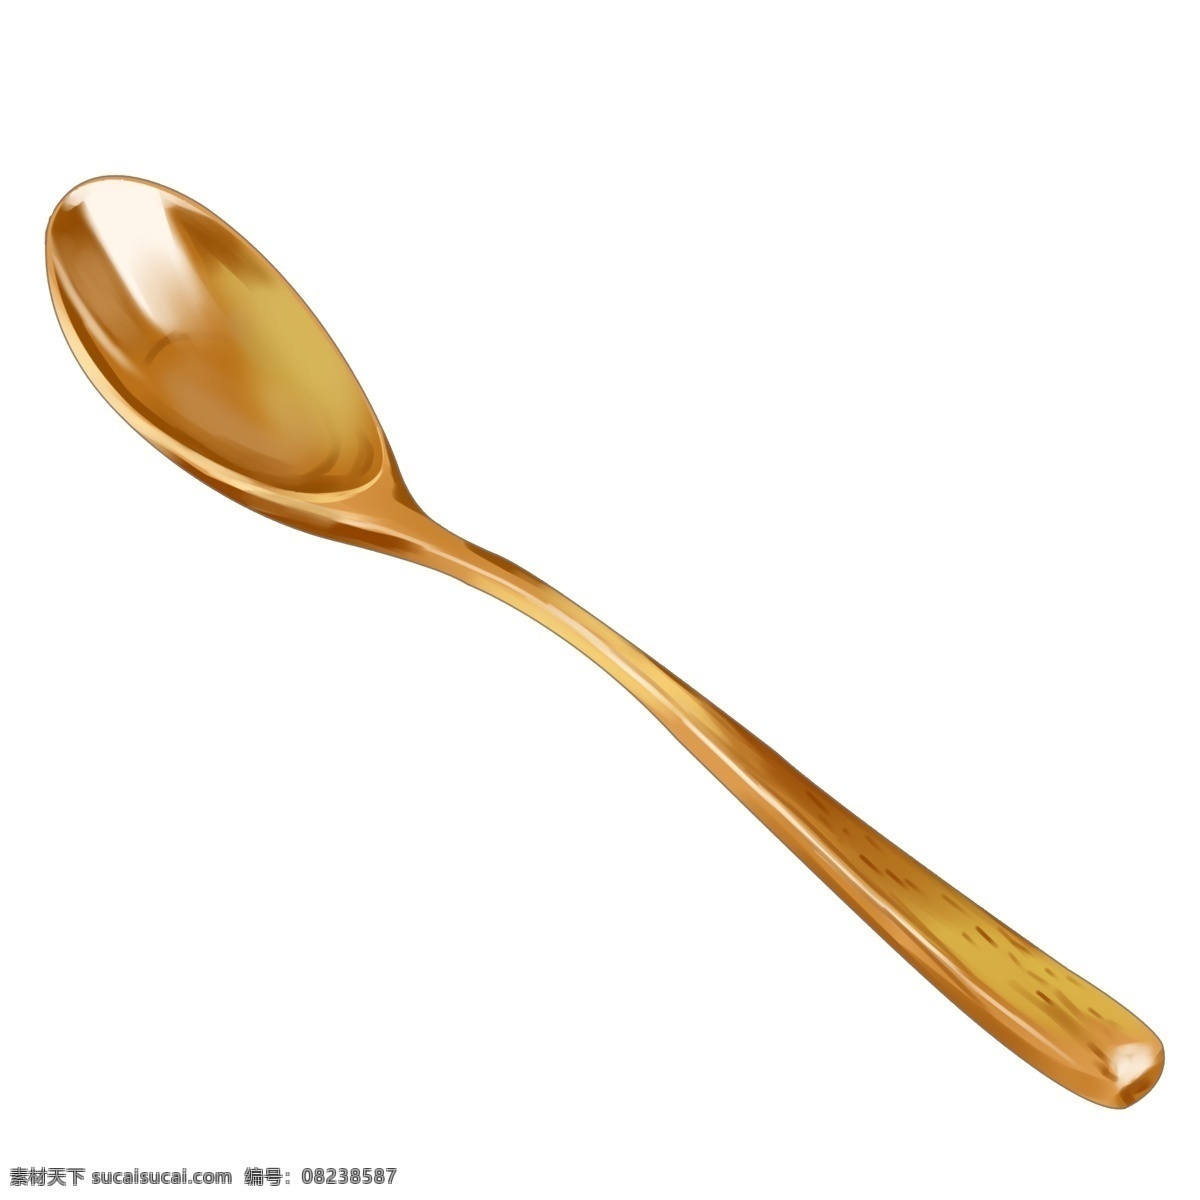 棕色 小巧 勺子 插图 棕色小巧勺子 仿真 光滑 半圆 实物 汤勺 陶瓷勺子 餐具 装饰